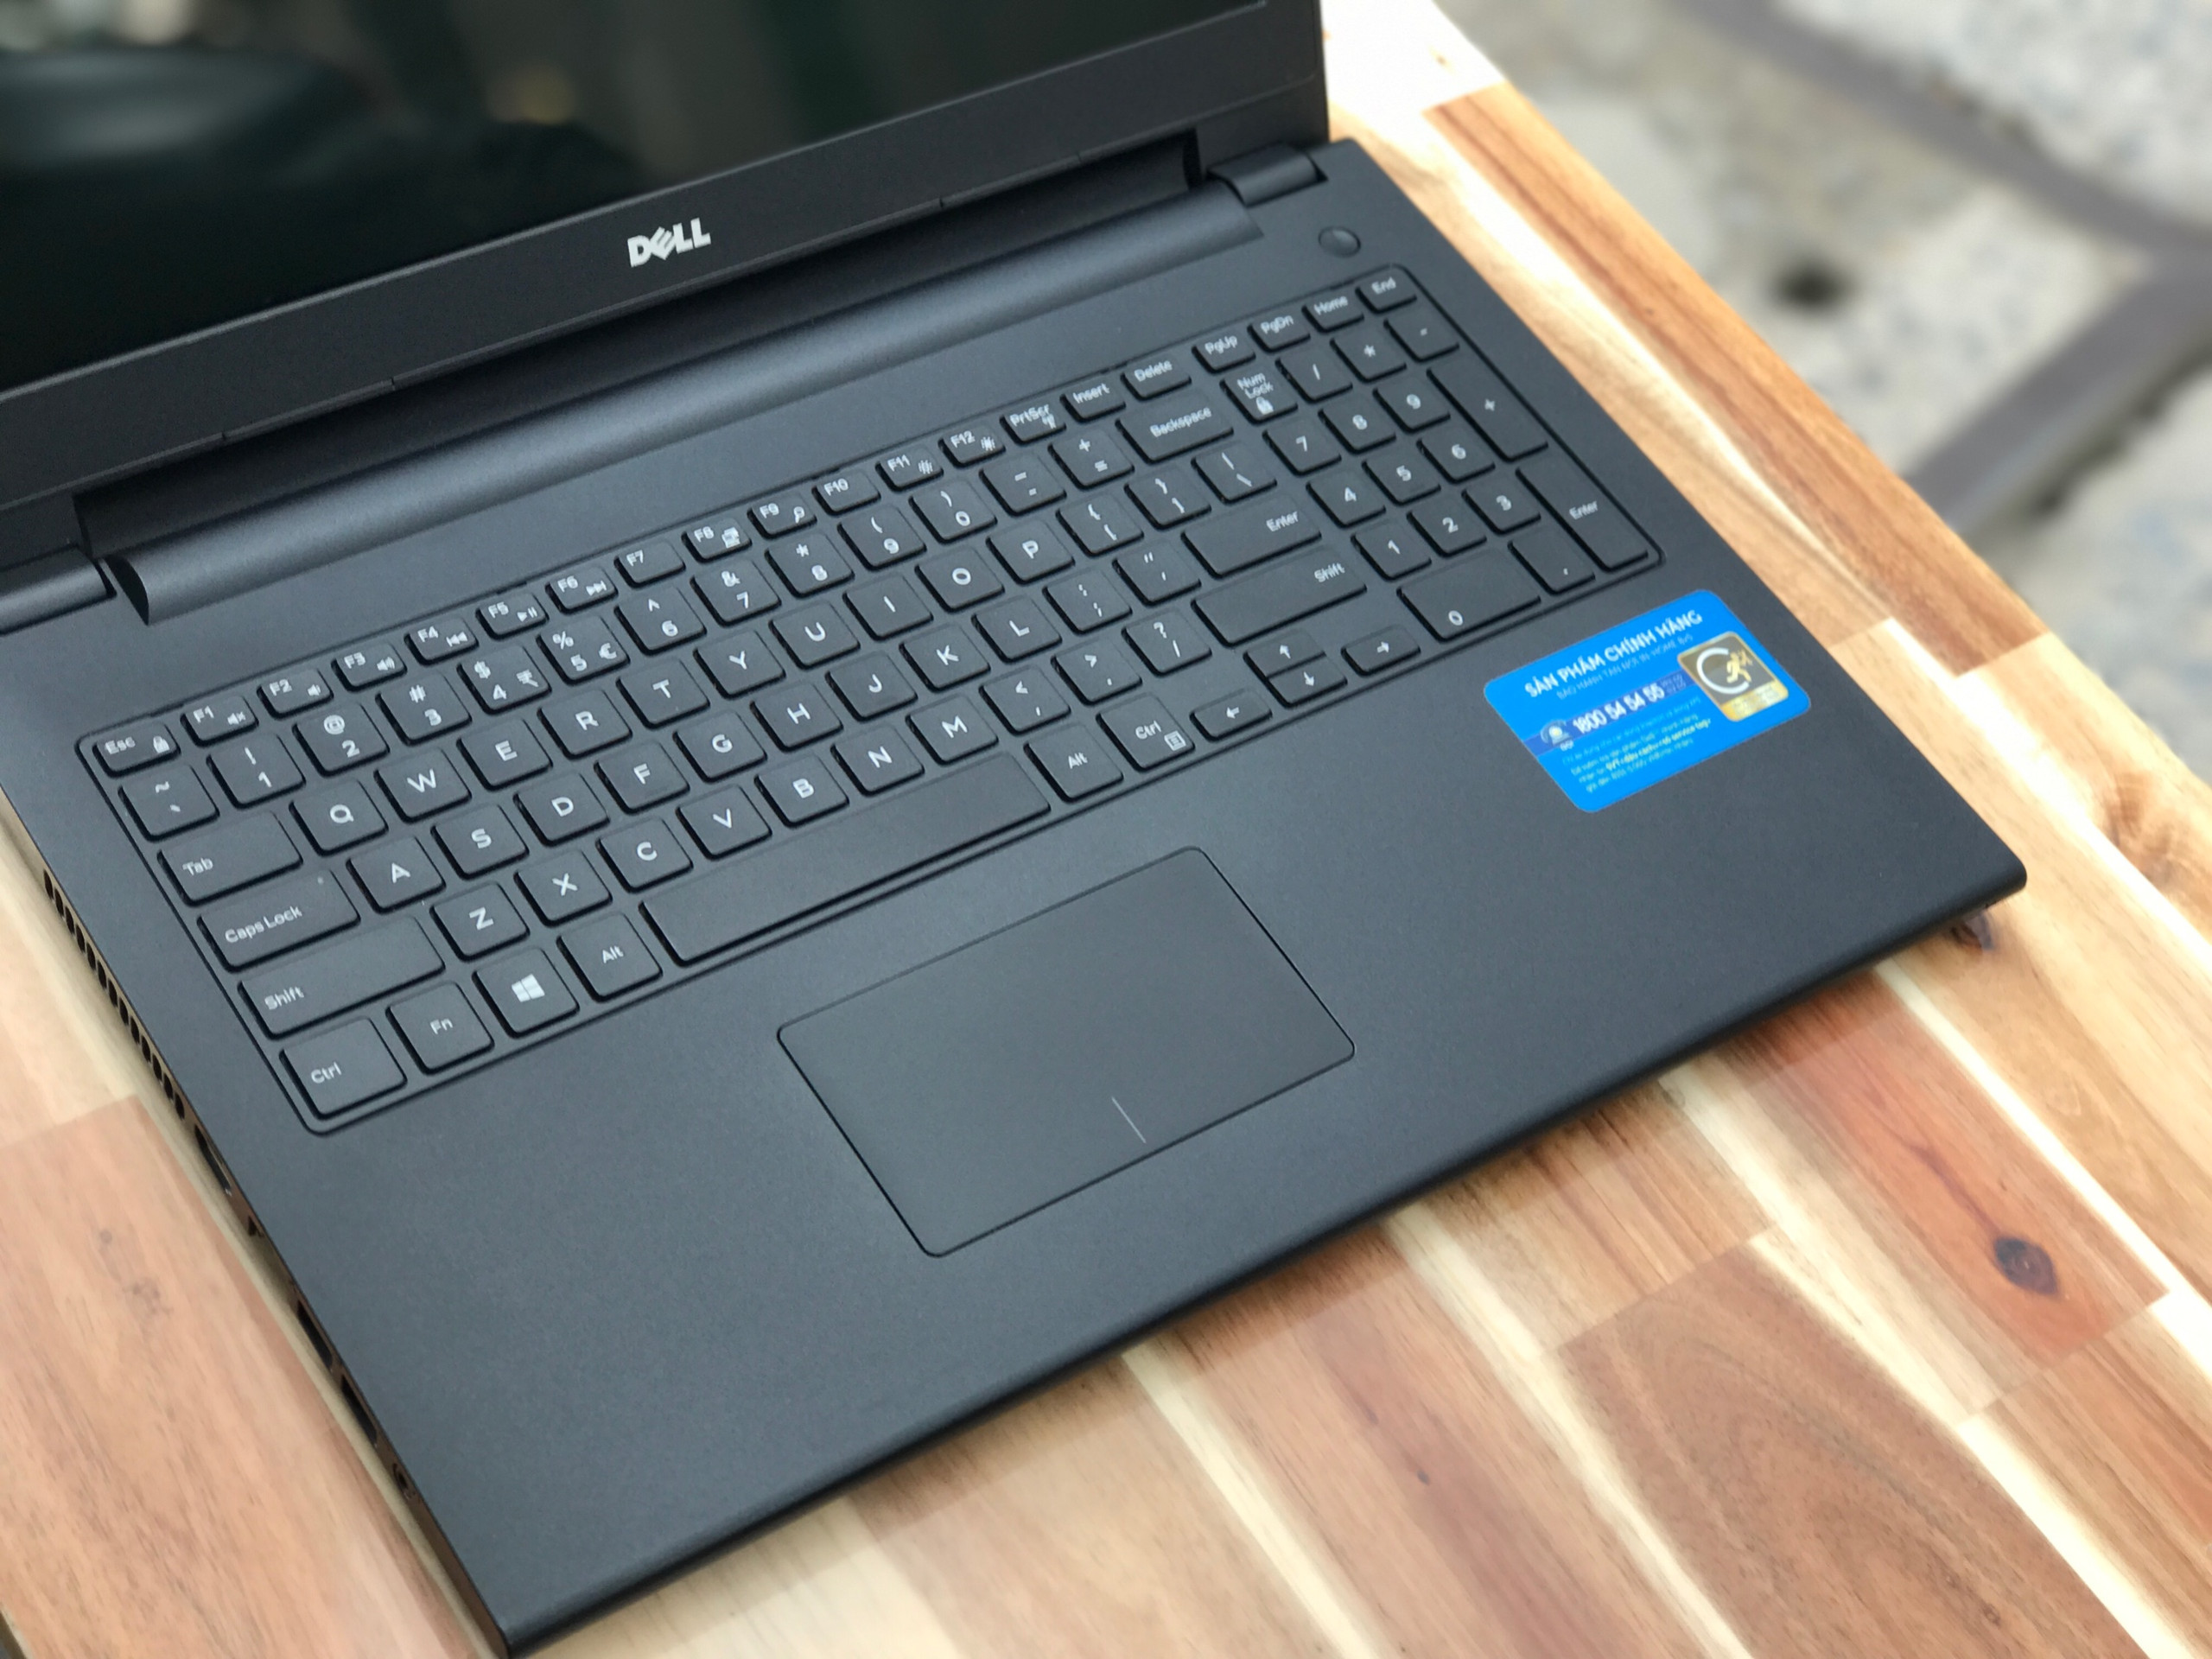 Laptop Dell Inspiron 3542, i3 4005U 4G 500G Vga Nvidia GT820M  đẹp zin 100% Giá rẻ3